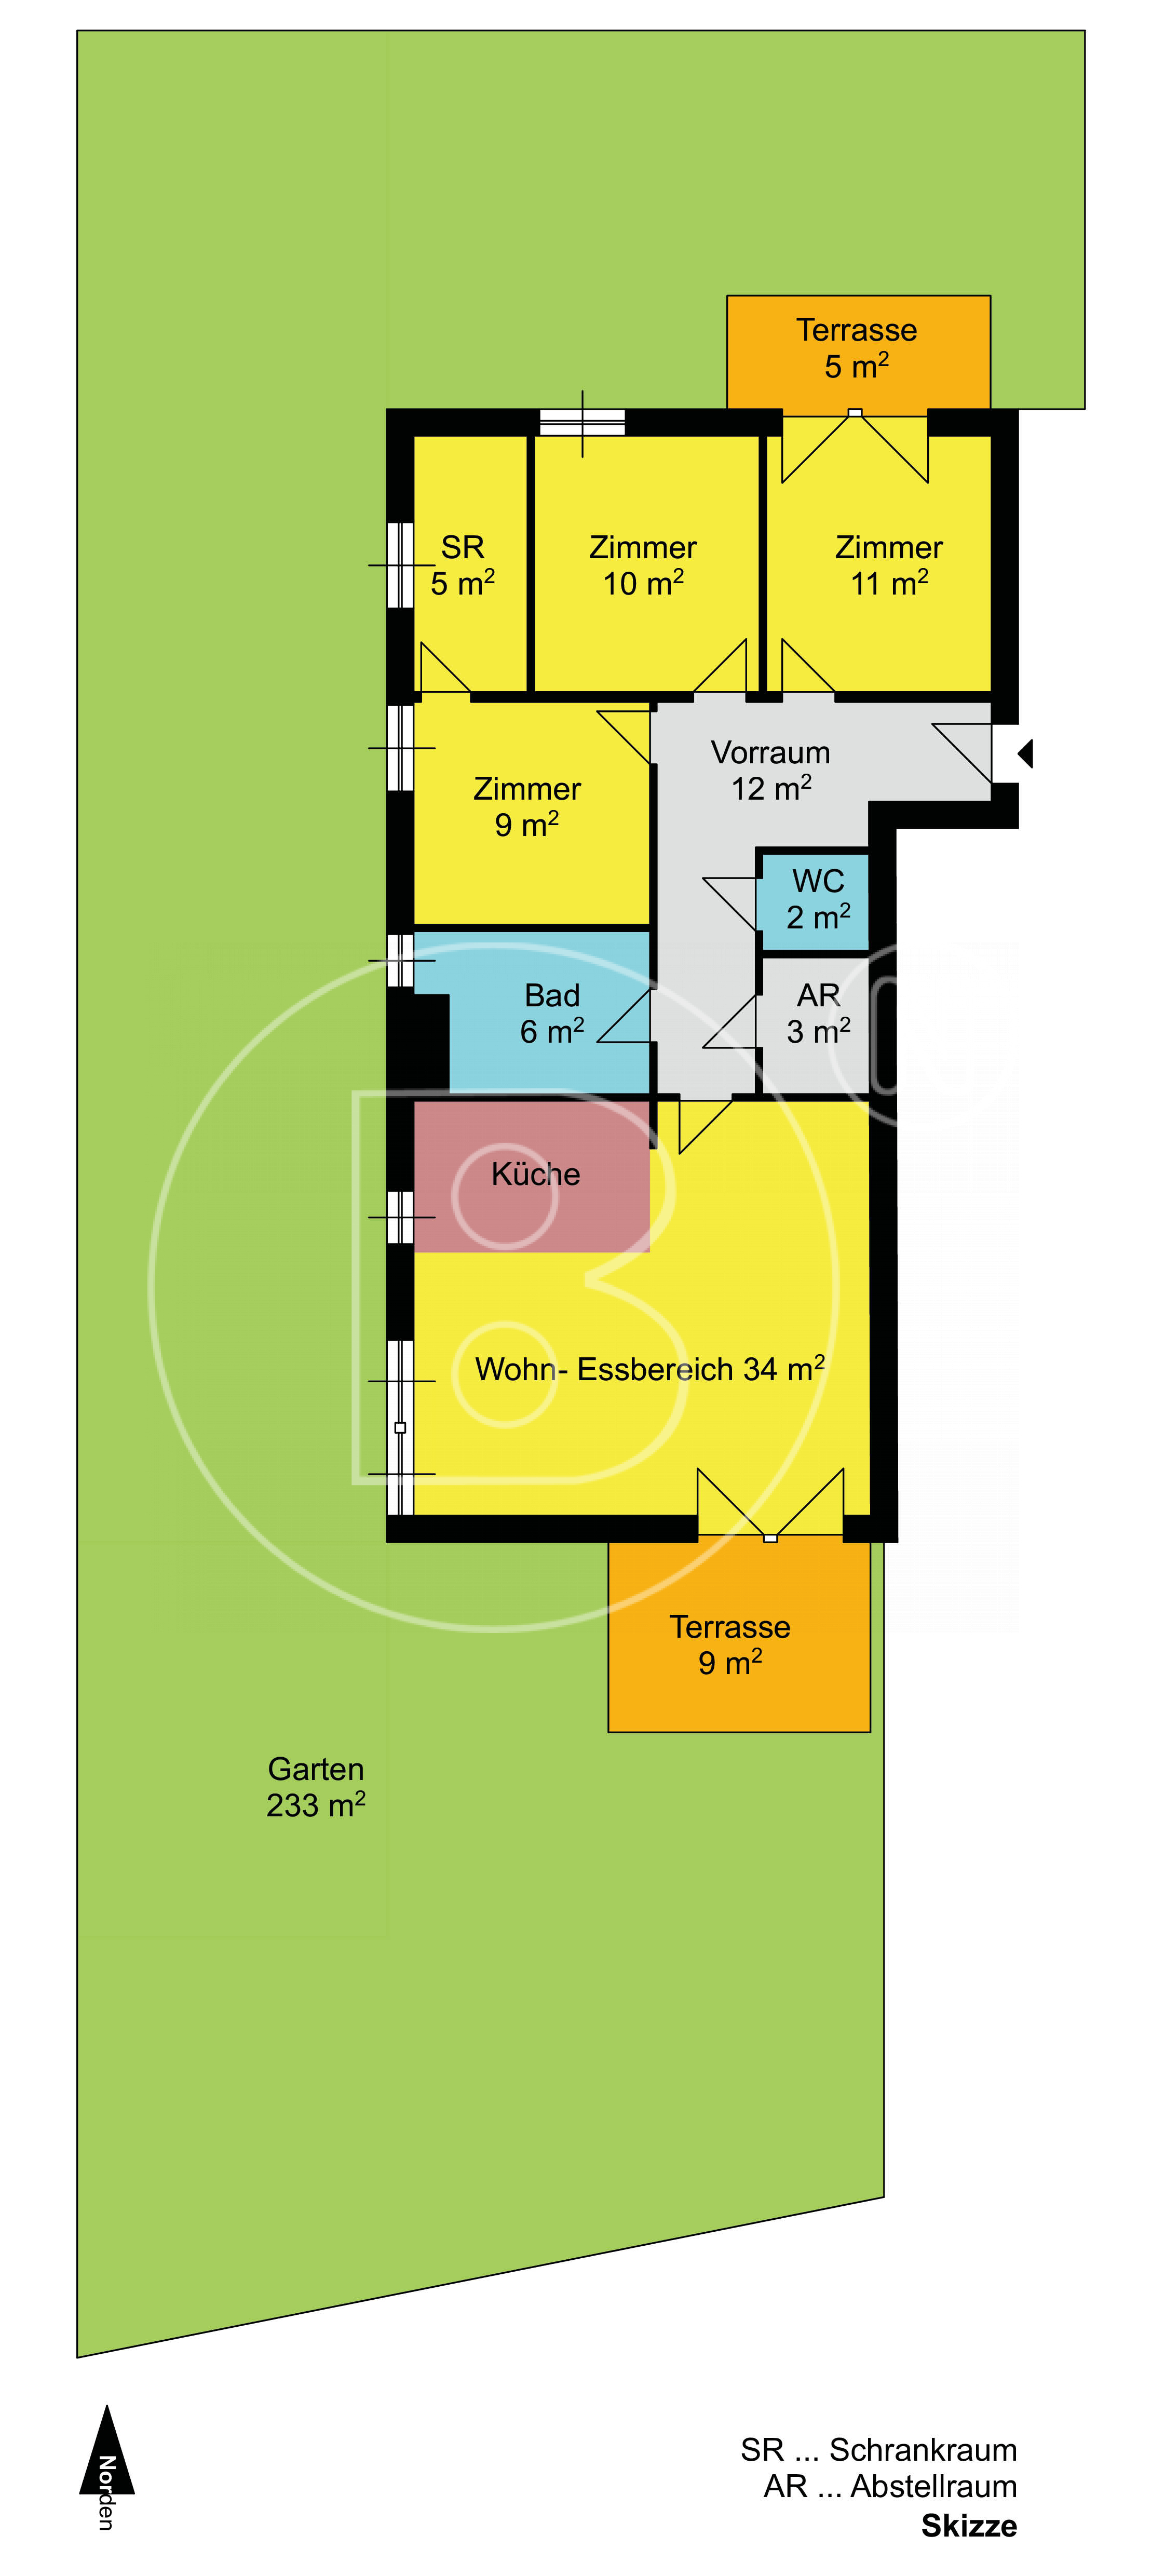 GRUNDRISS - Moderne 4-Zimmer-Gartenwohnung mit Garagenoption in Toplage!